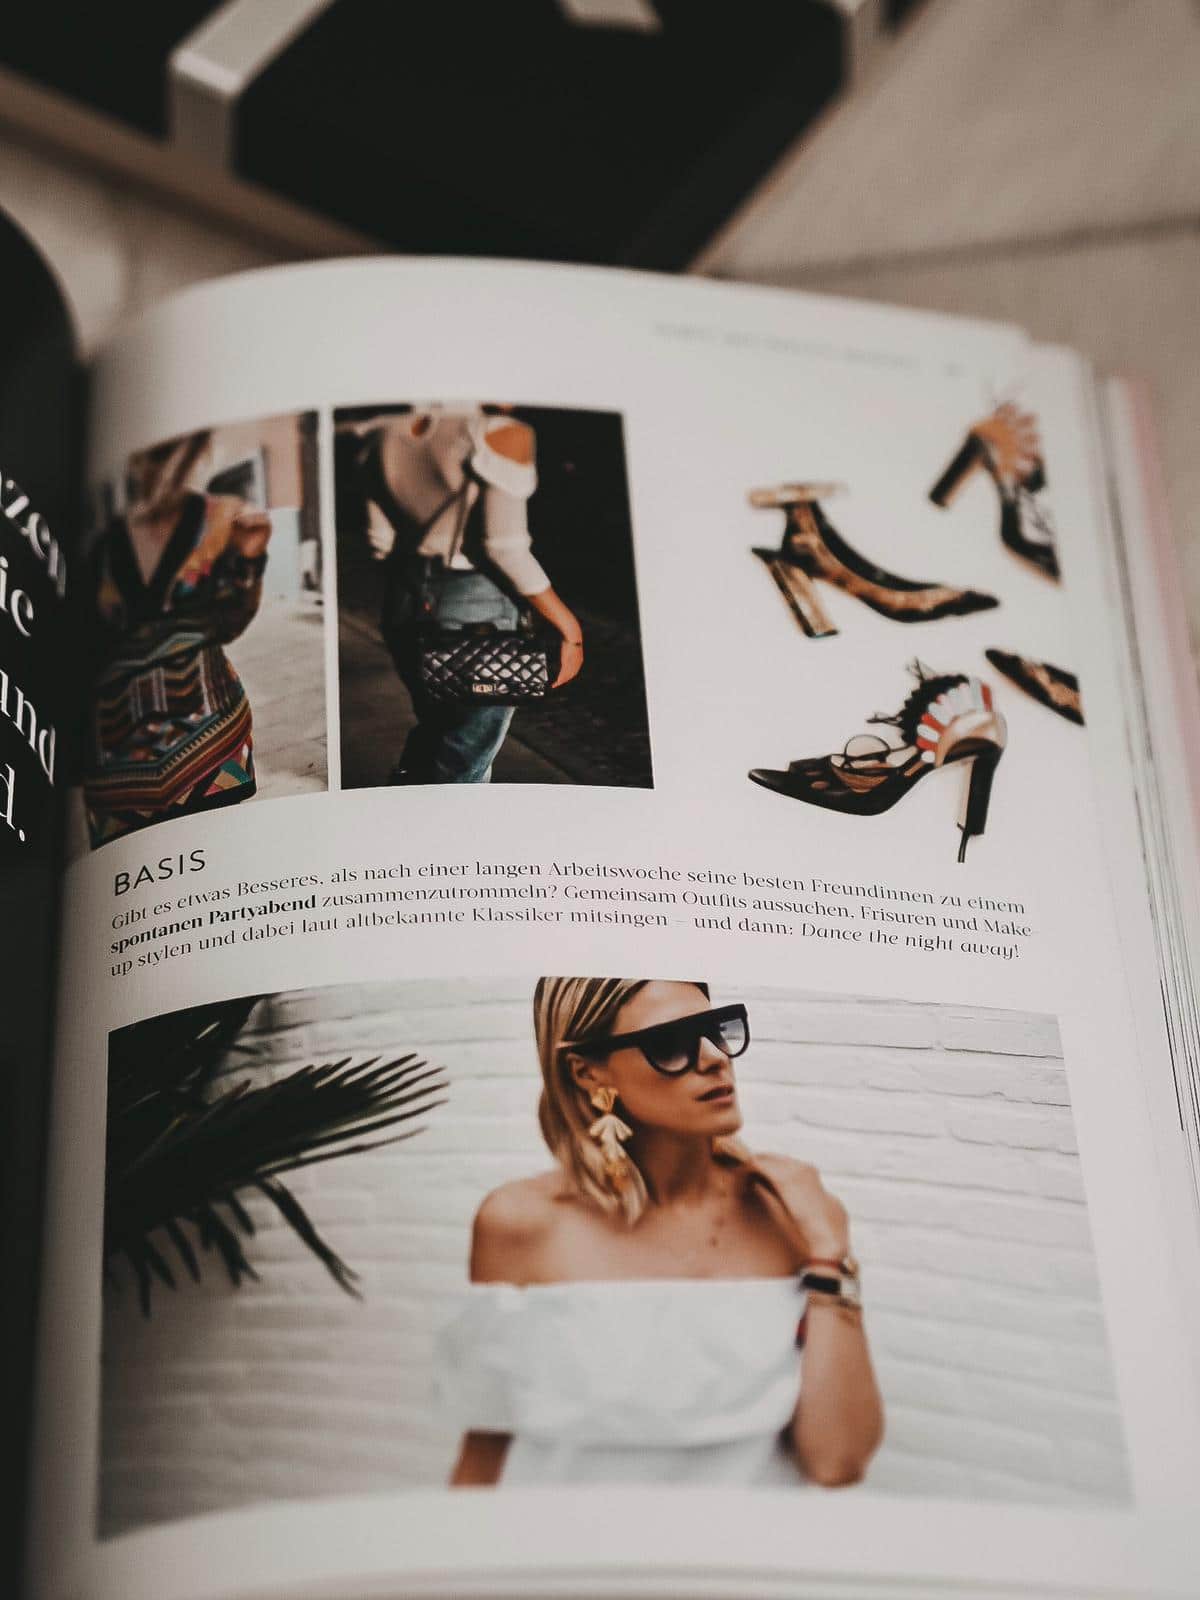 Heute zeige ich auf dem Blog Bücher für Fashion Blogger "Outfit of the Day-Fashion-Styles für jede Stimmung“ und der prächtige Bildband "Vogue - Schmuck".